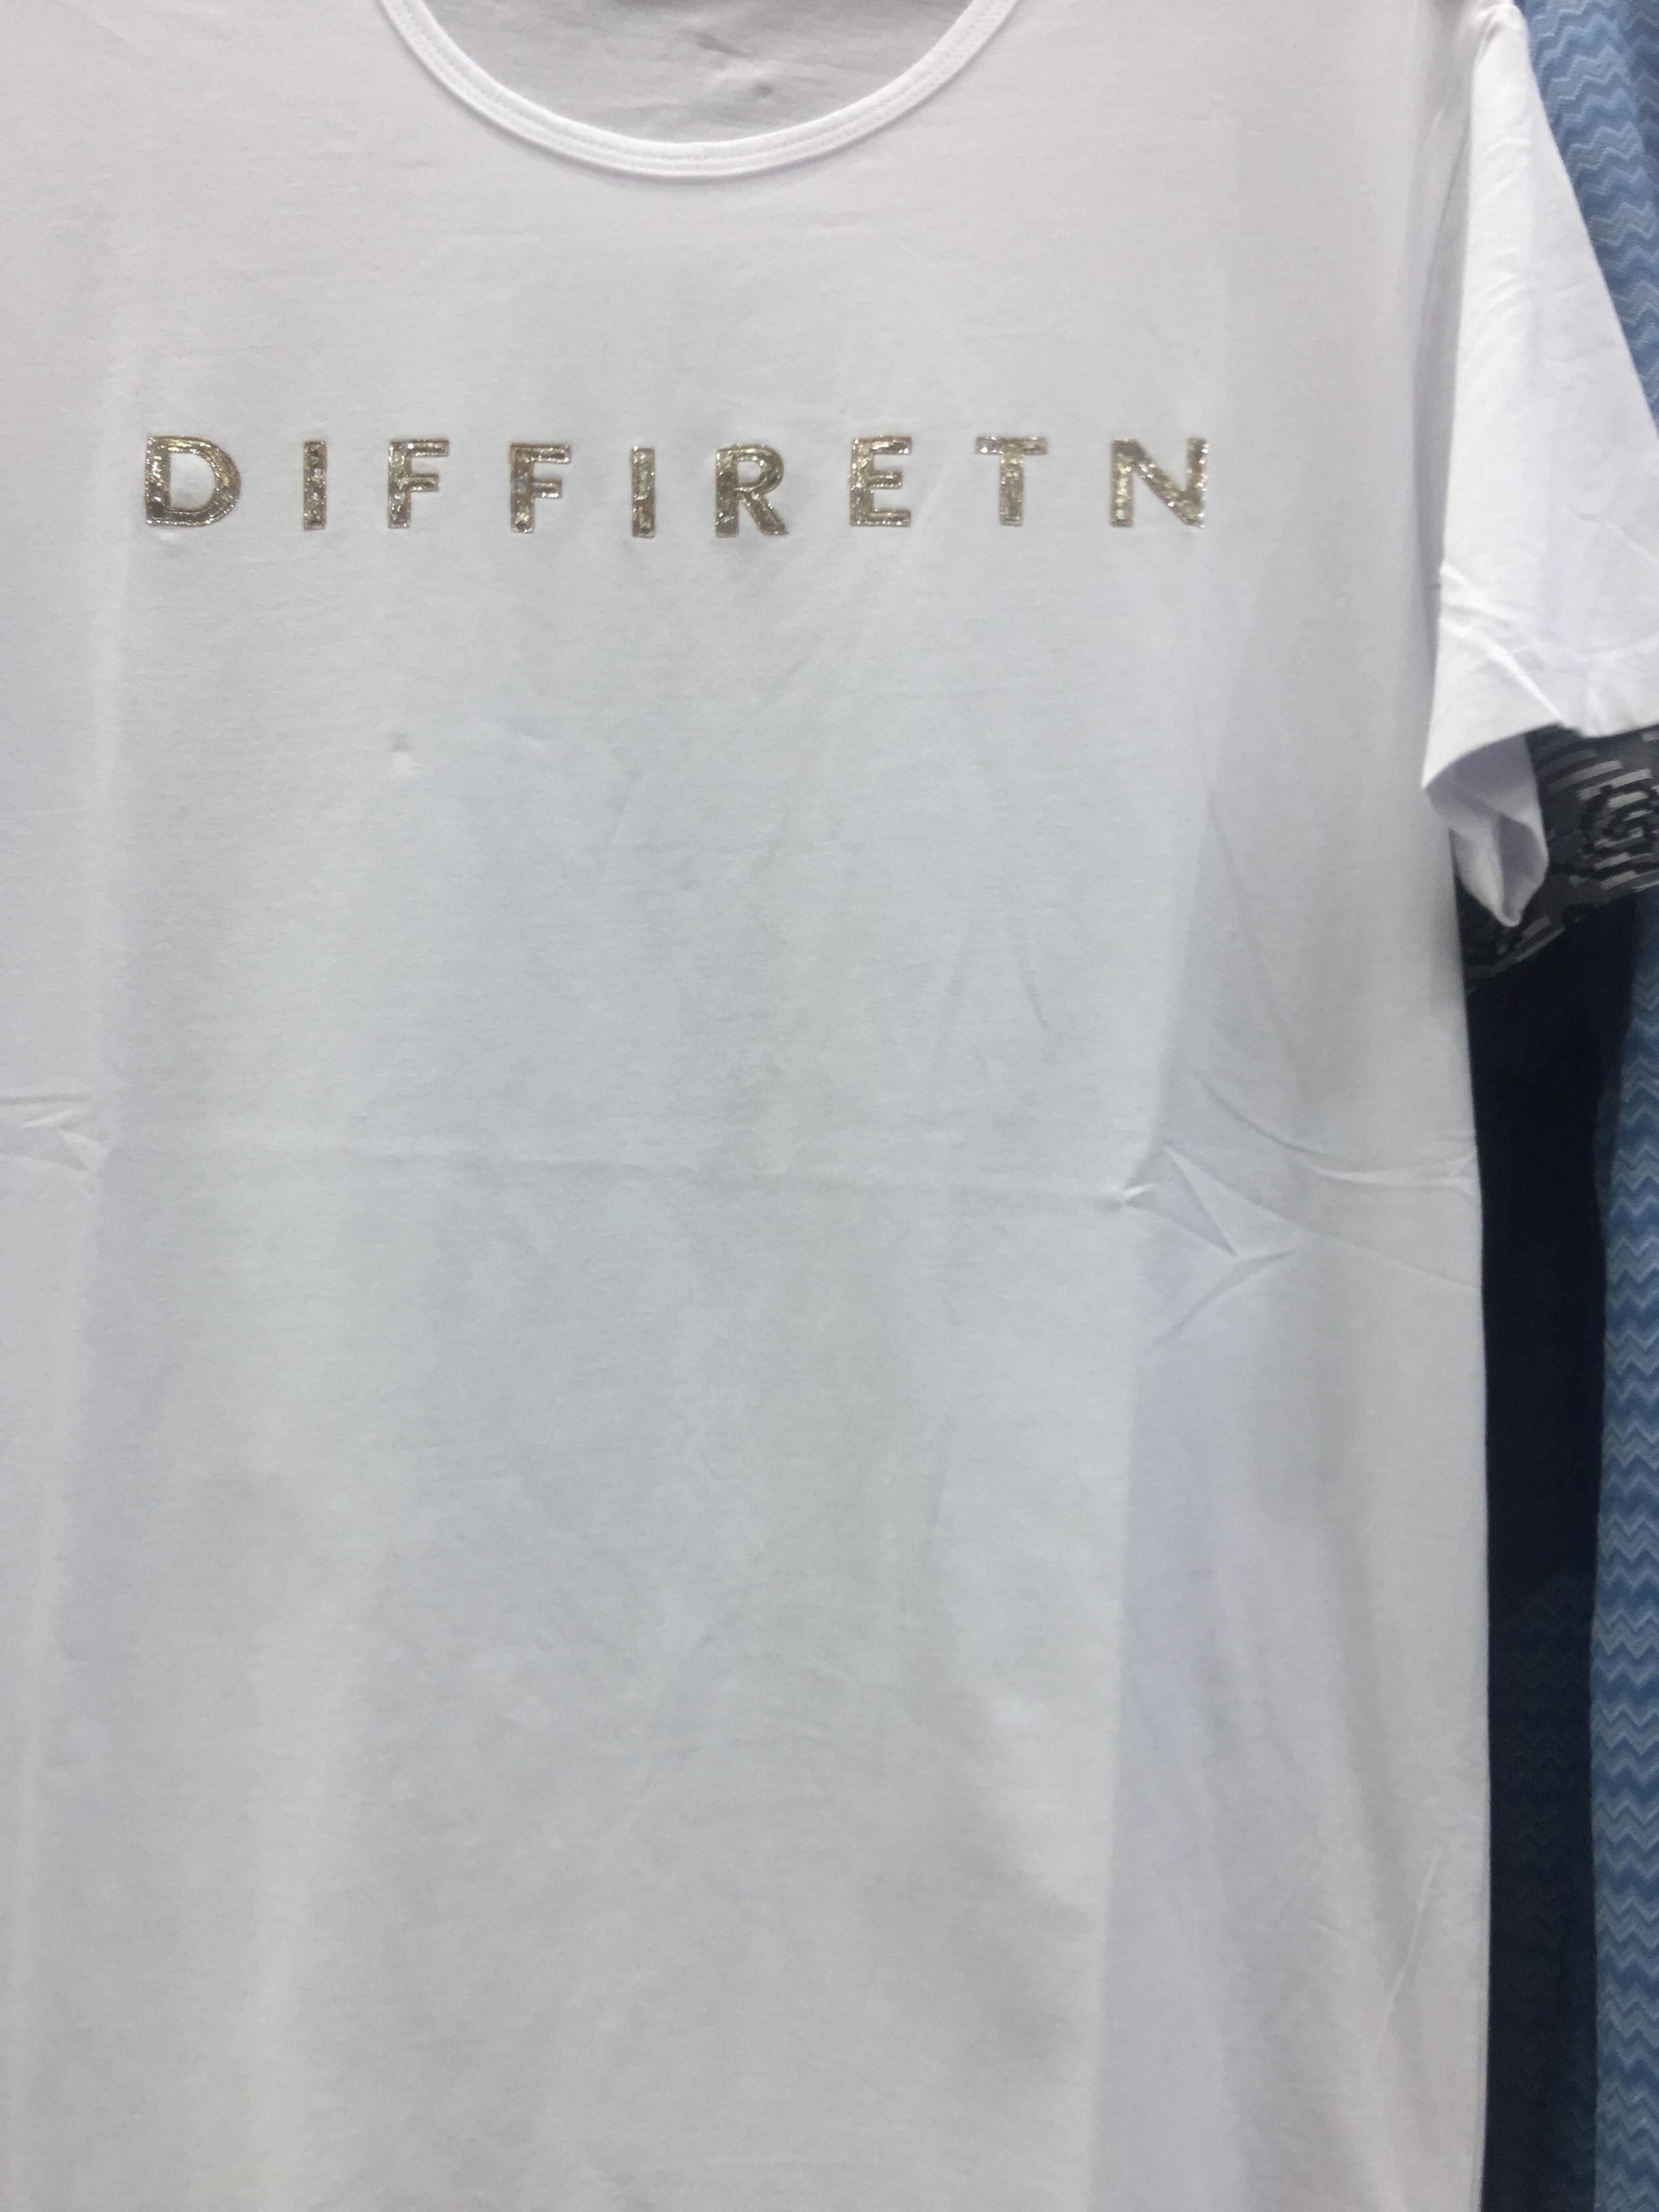 shirt that says &quot;diffiretn&quot;